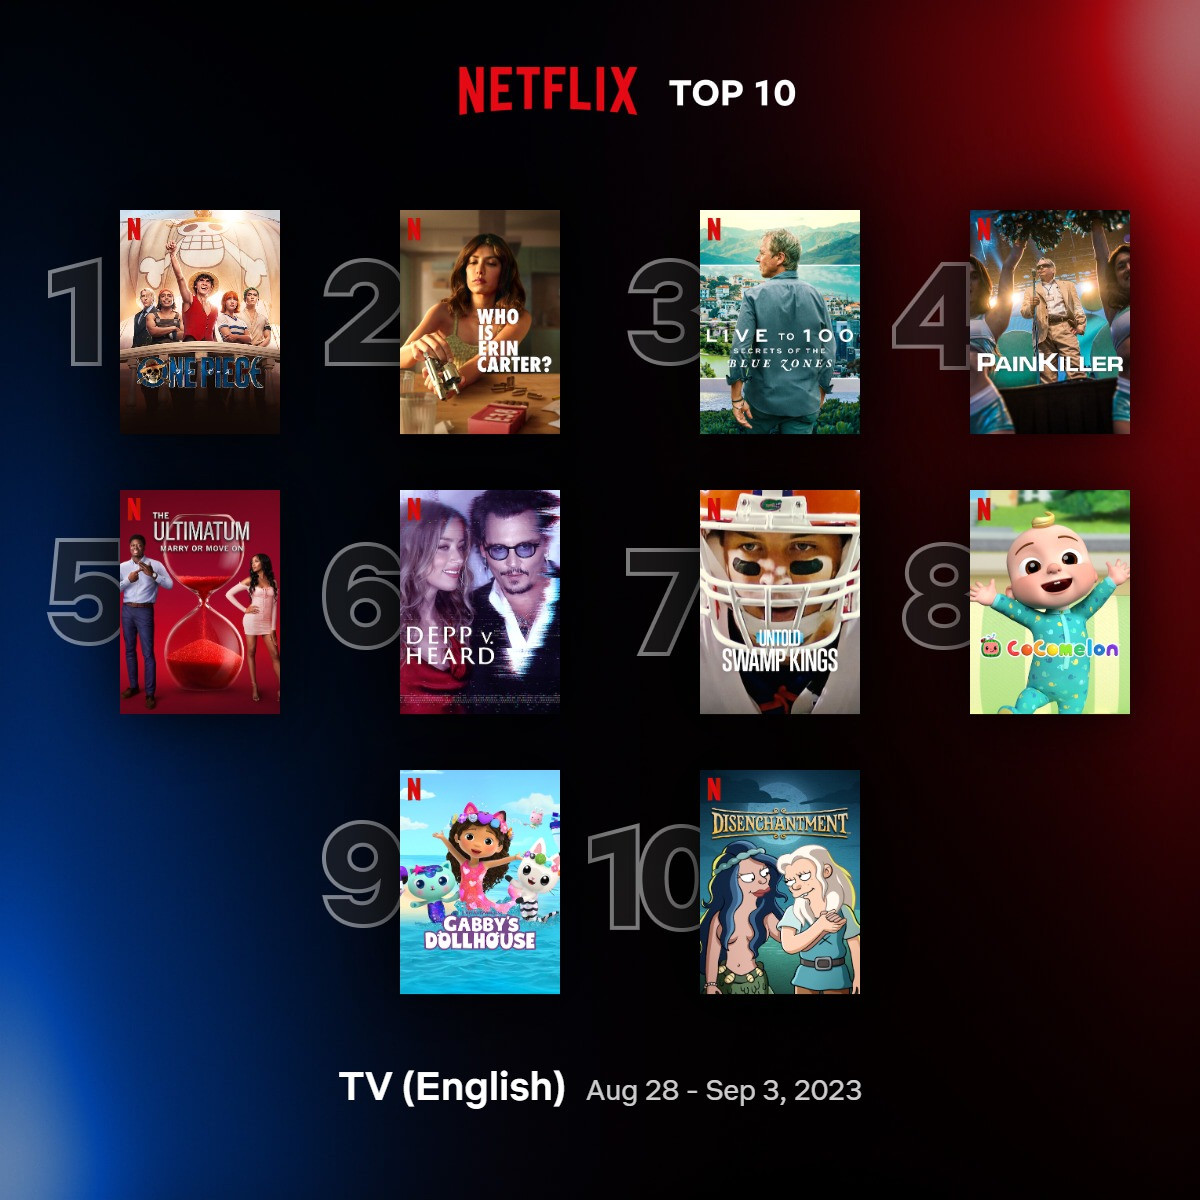 Netflix TV Top 10 Aug 28-Sept3